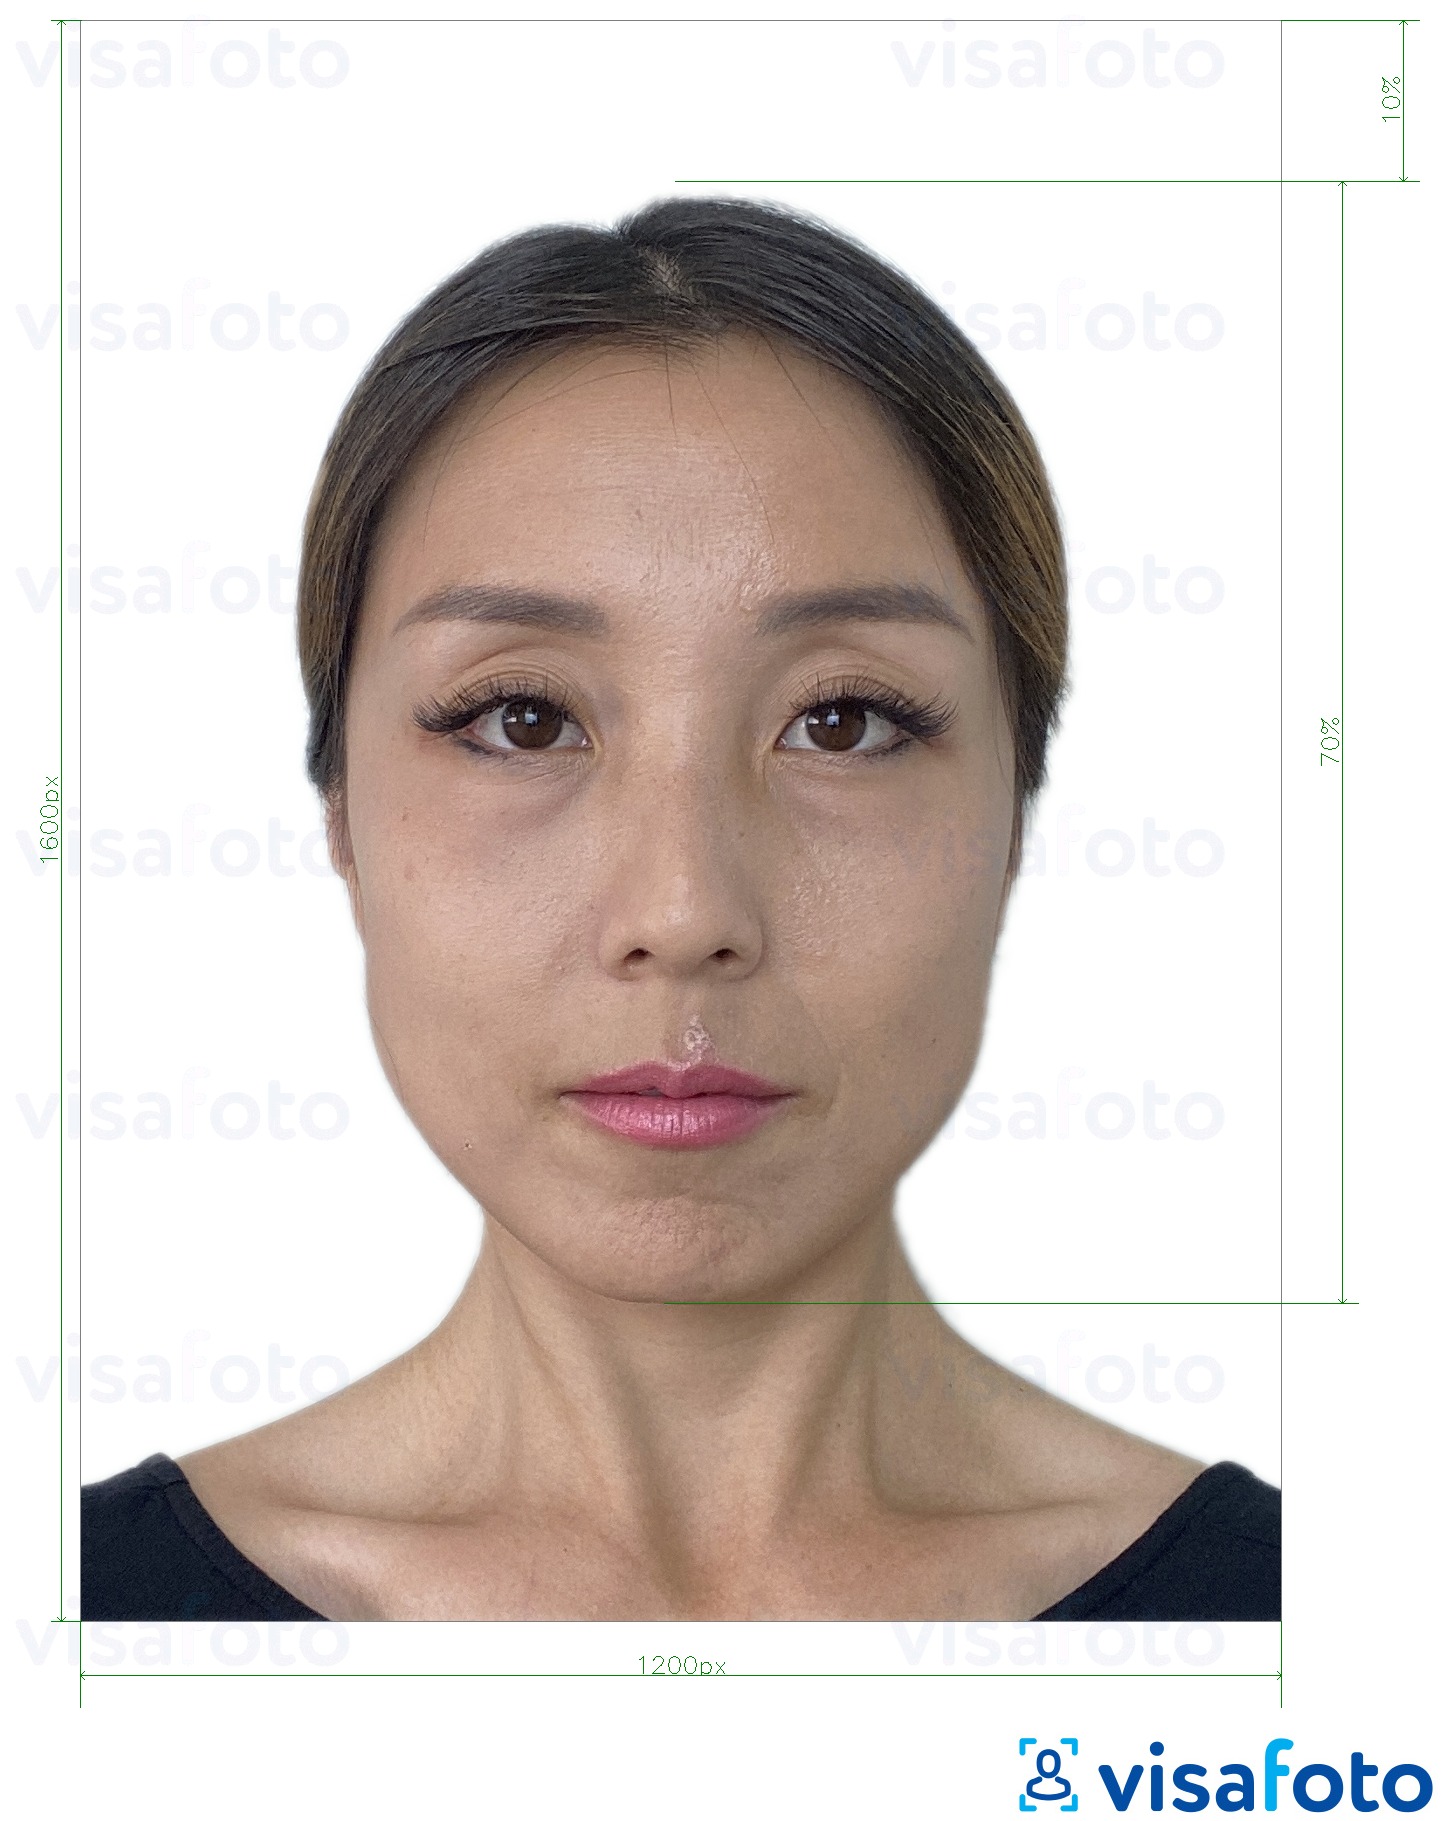 ตัวอย่างภาพถ่ายสำหรับ ฮ่องกง e-passport ออนไลน์ขนาด 1200x1600 พิกเซล ด้วยข้อกำหนดเกี่ยวกับขนาดที่แน่นอน